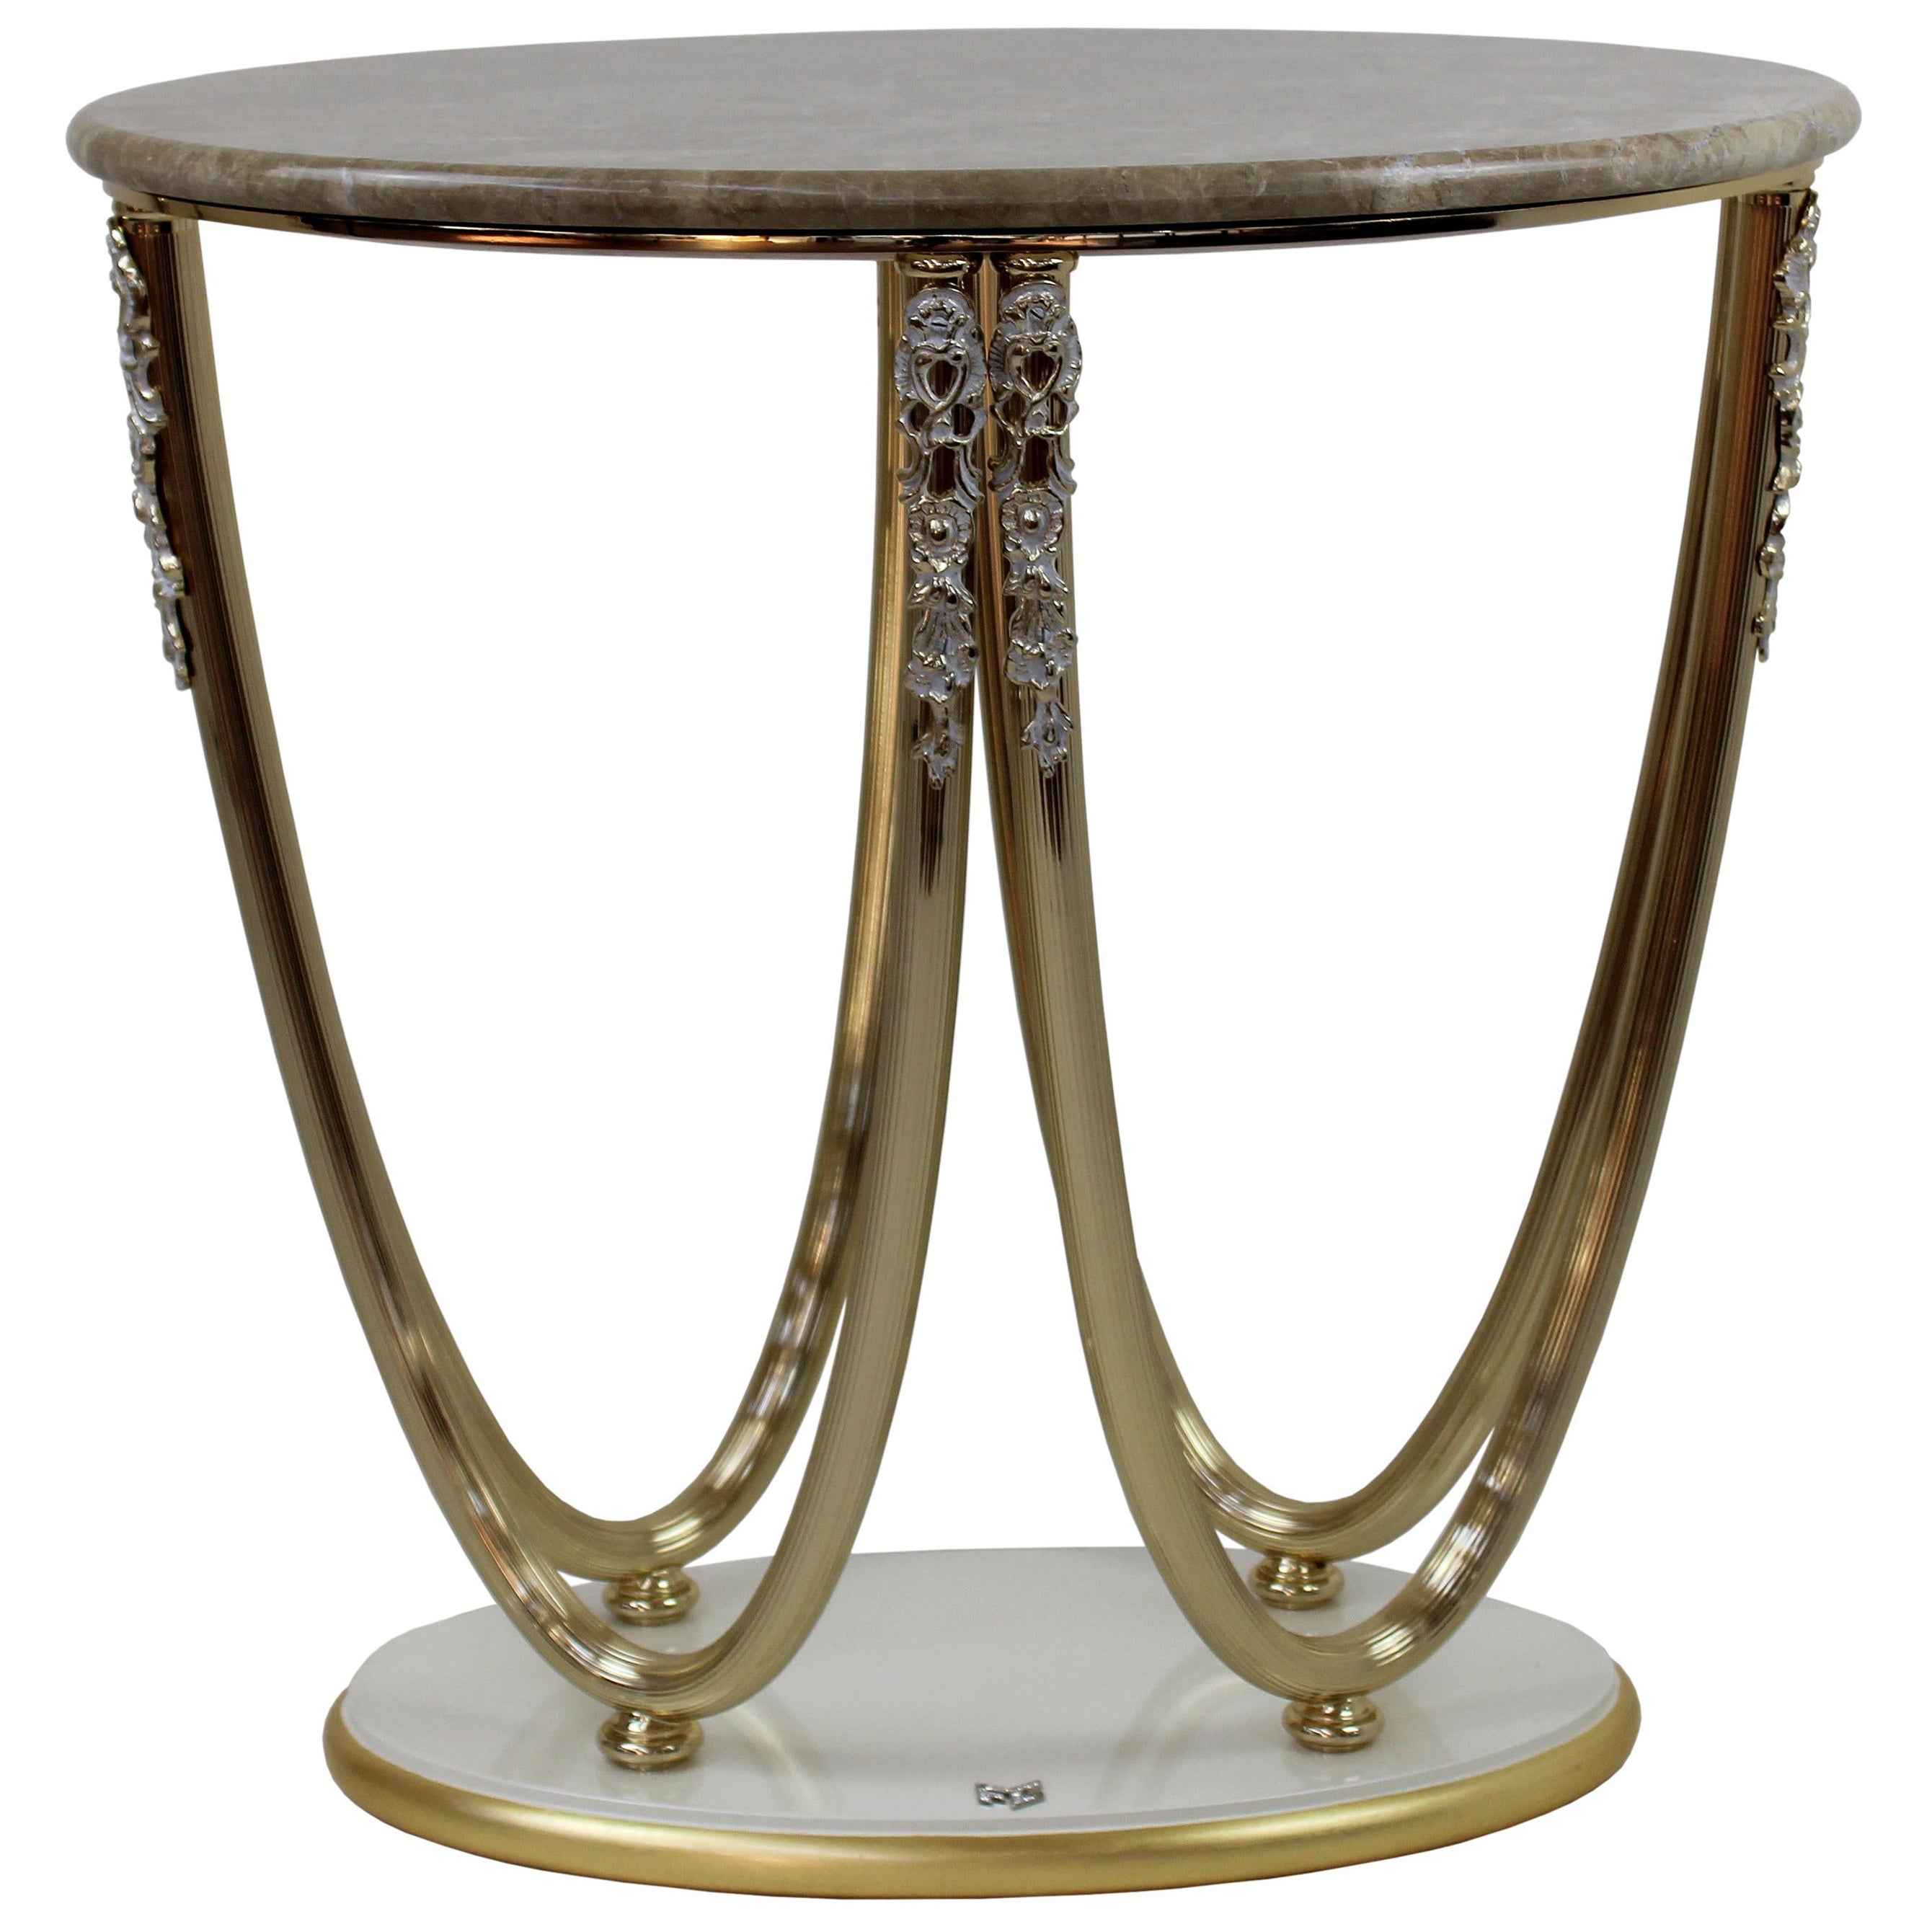 Table d'appoint avec plateau en marbre, base en bois et cadre en métal AQ175